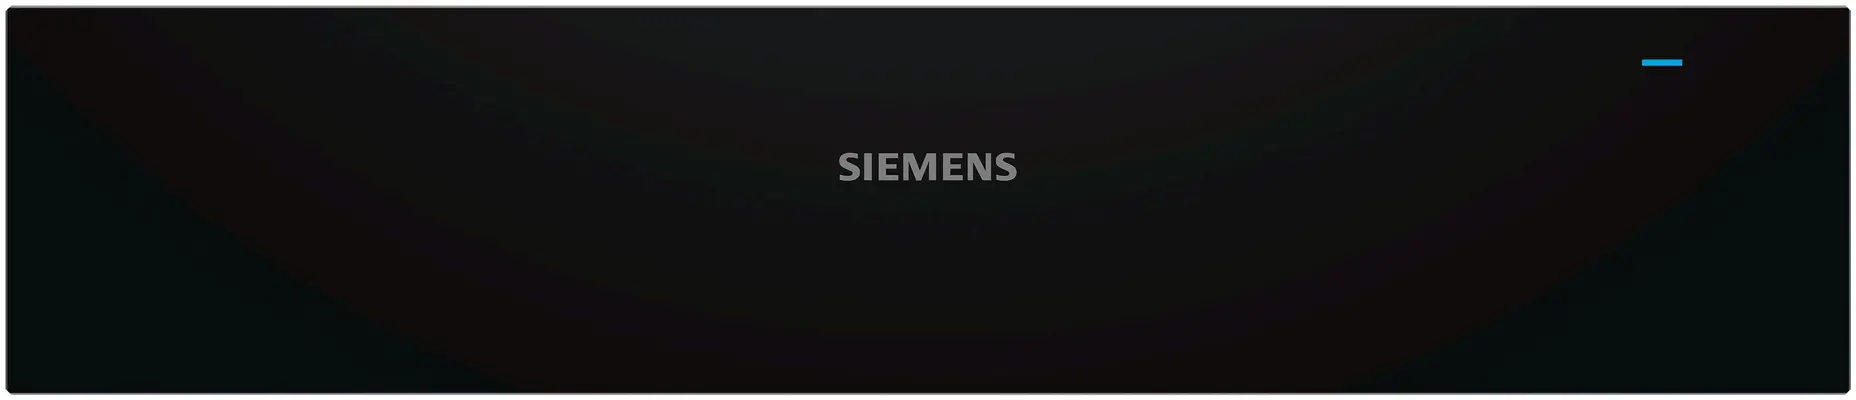 BI510CNR0-Siemens-Warmhoudlades